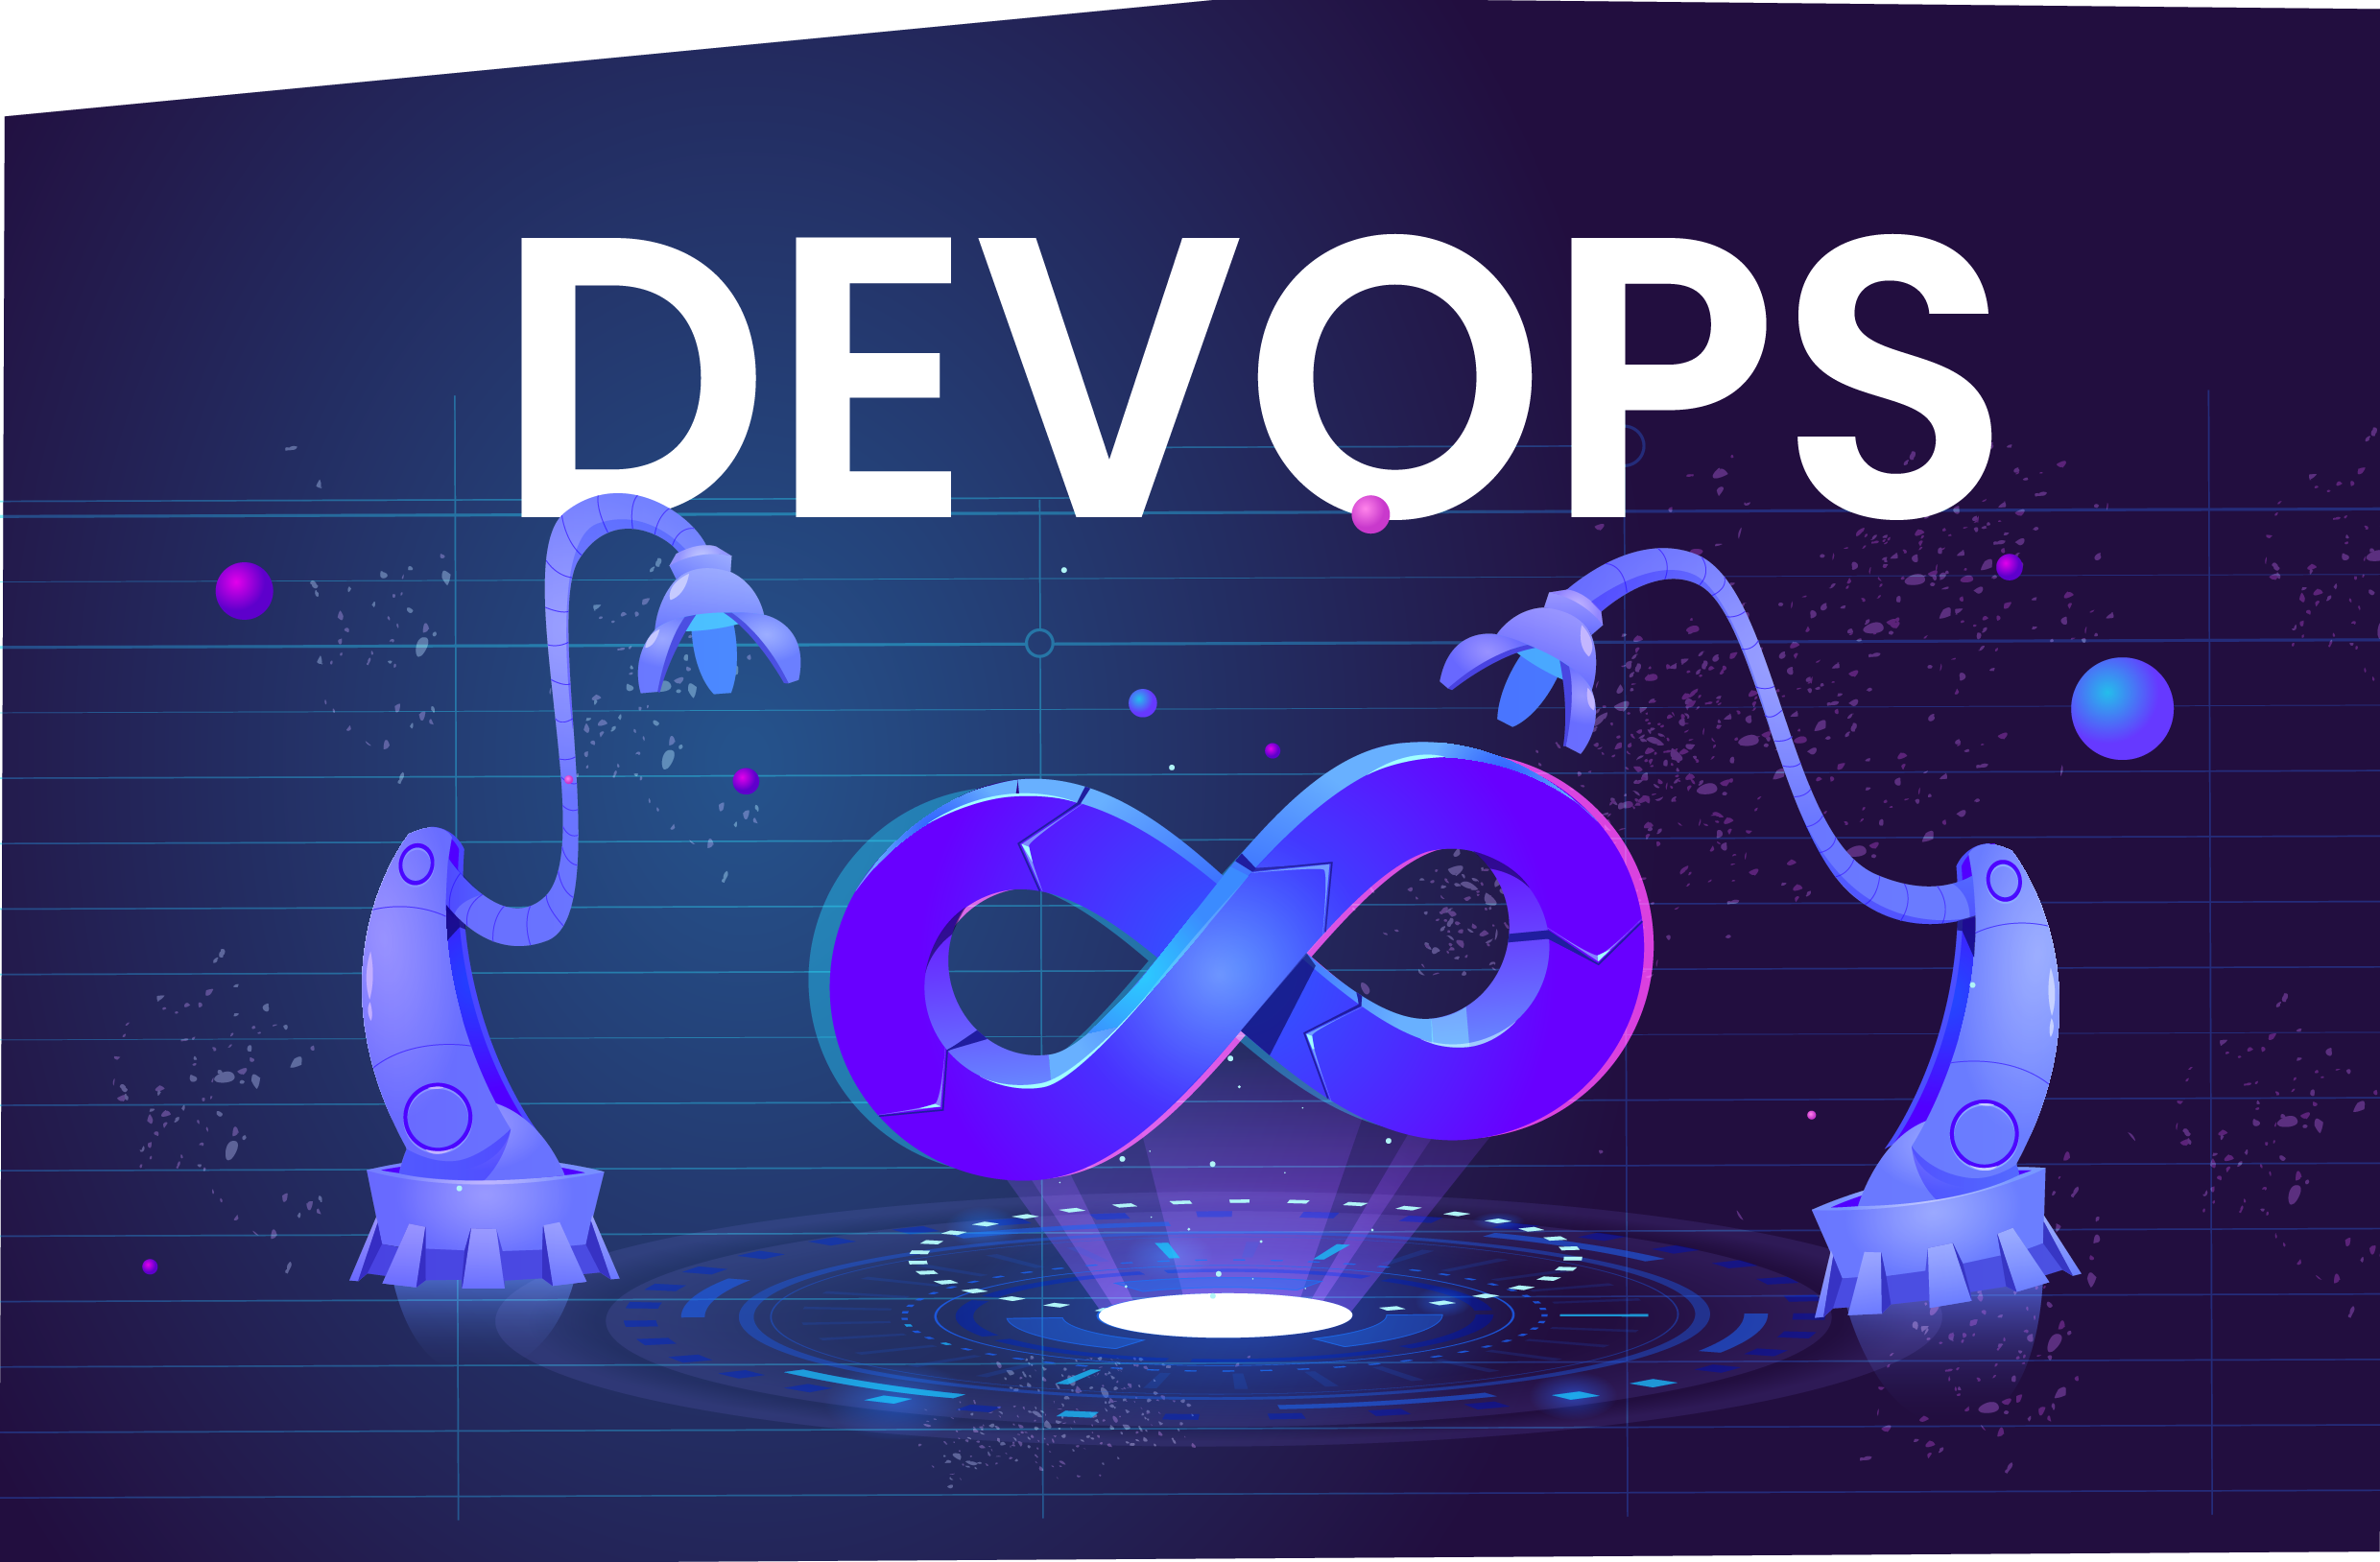  ¿Qué es DevOps y por qué es importante?